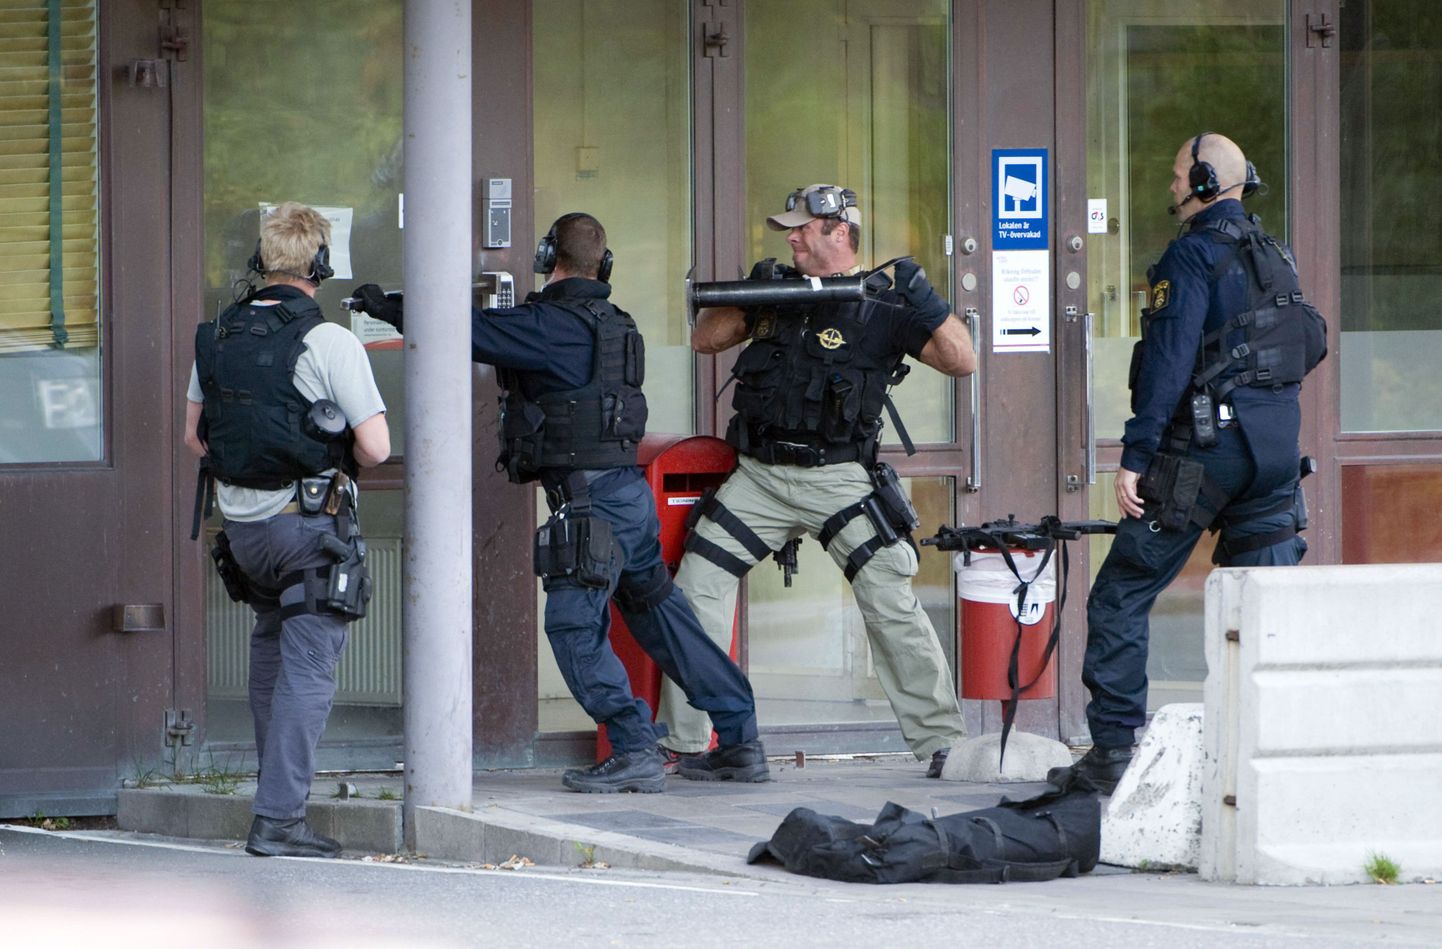 Rootsi märulipolitsei tungib sisse G4S rahahoidlasse Västbergas.